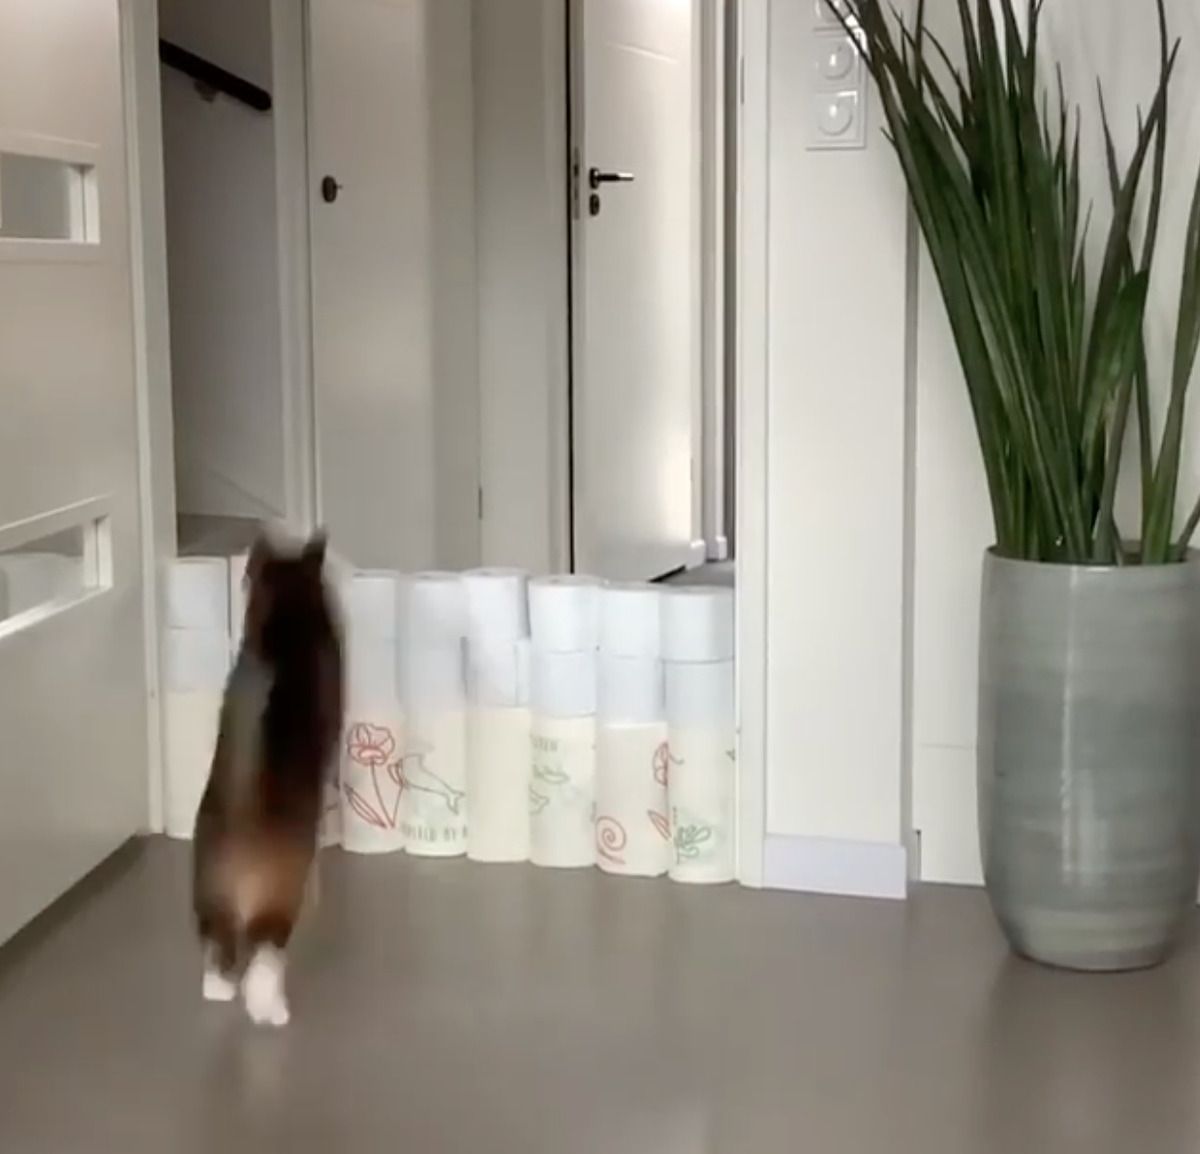 Новий челендж карантину: коти проти туалетного паперу. Користувачі соцмереж дивляться, скільки рулонів туалетного паперу можуть перестрибнути їх коти чи собаки.